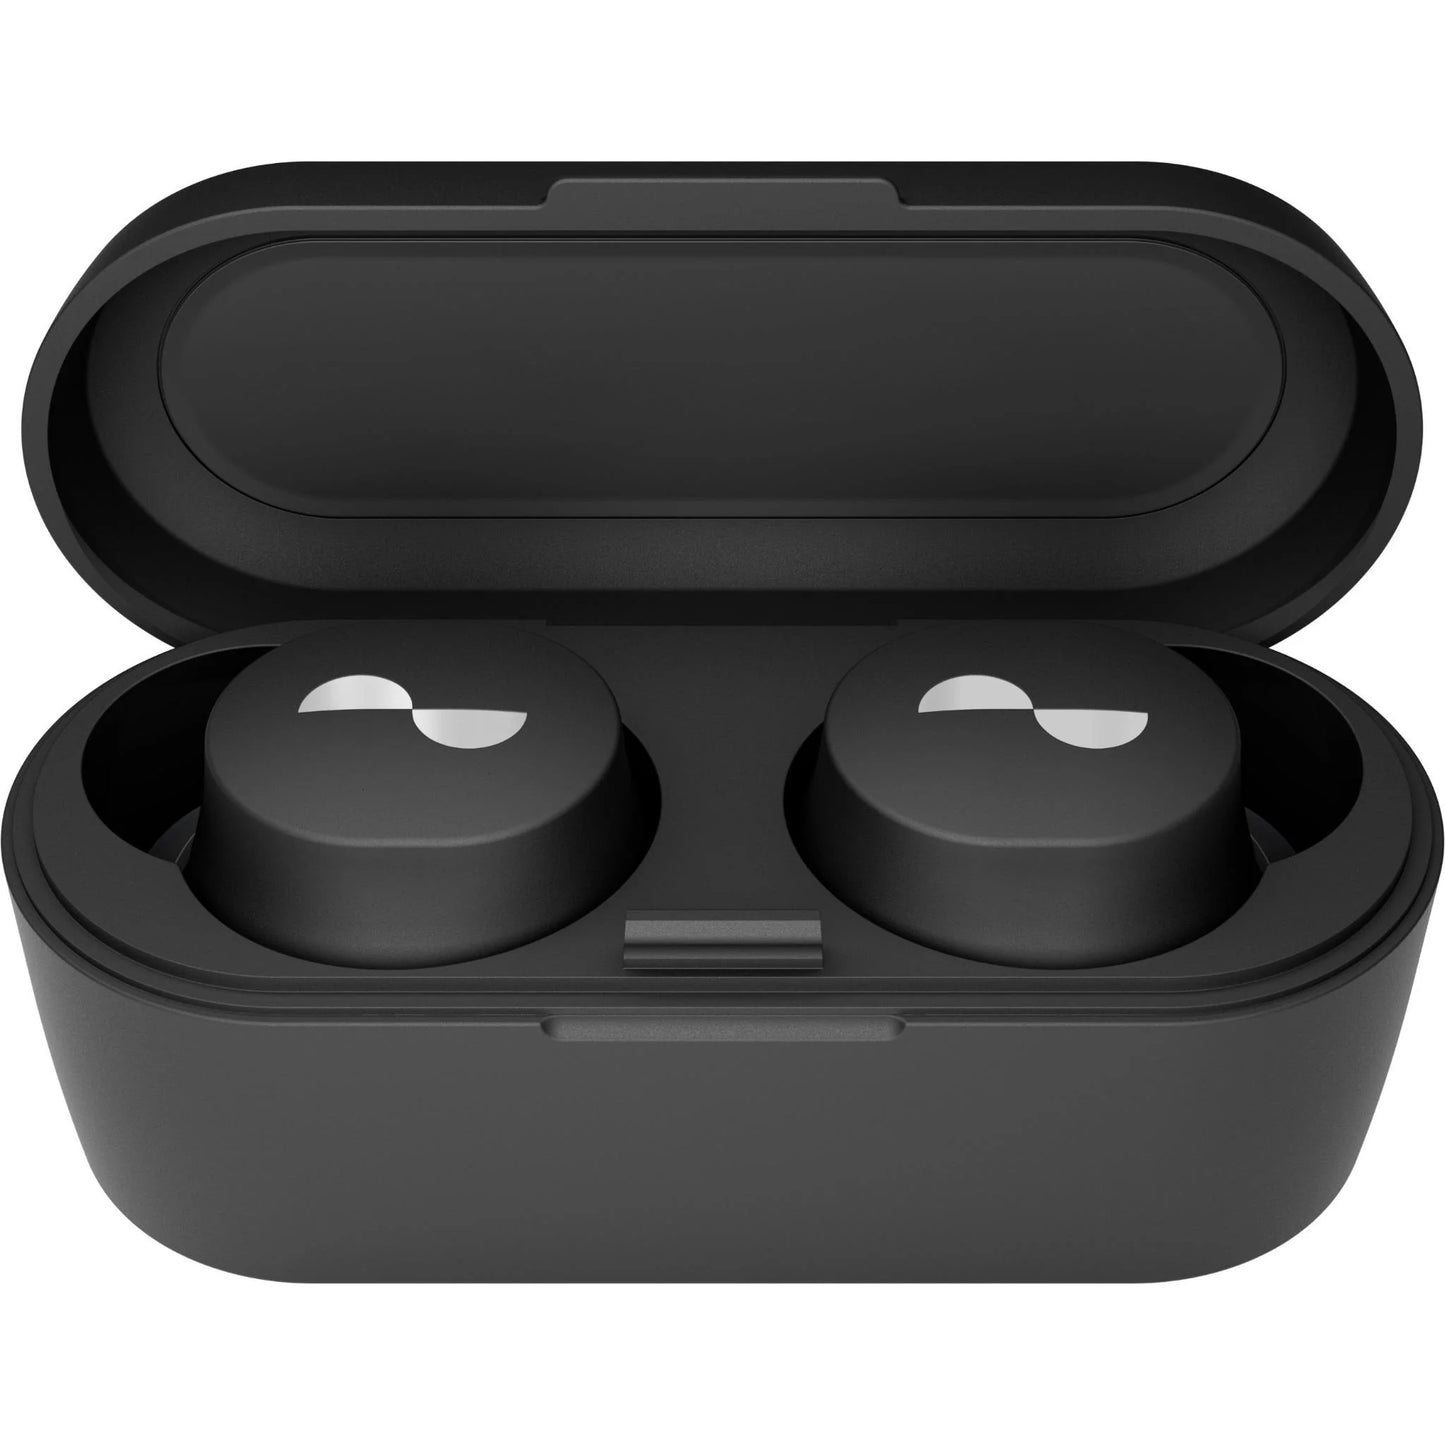 NuraBuds 2 True Wireless ANC In-Ear Headphones